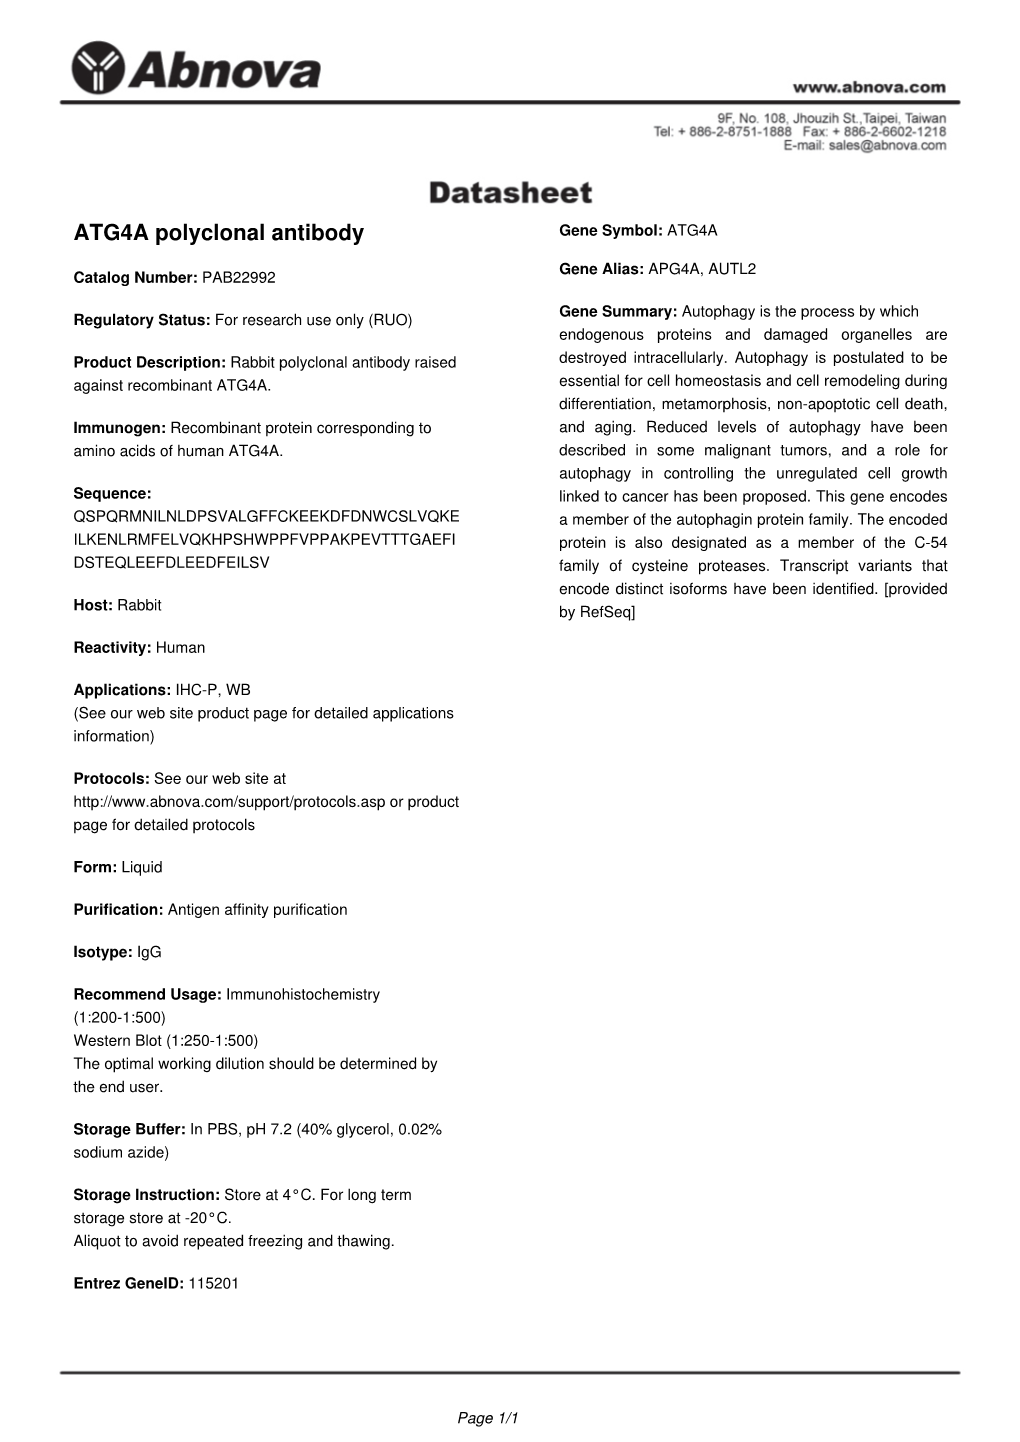 ATG4A Polyclonal Antibody Gene Symbol: ATG4A